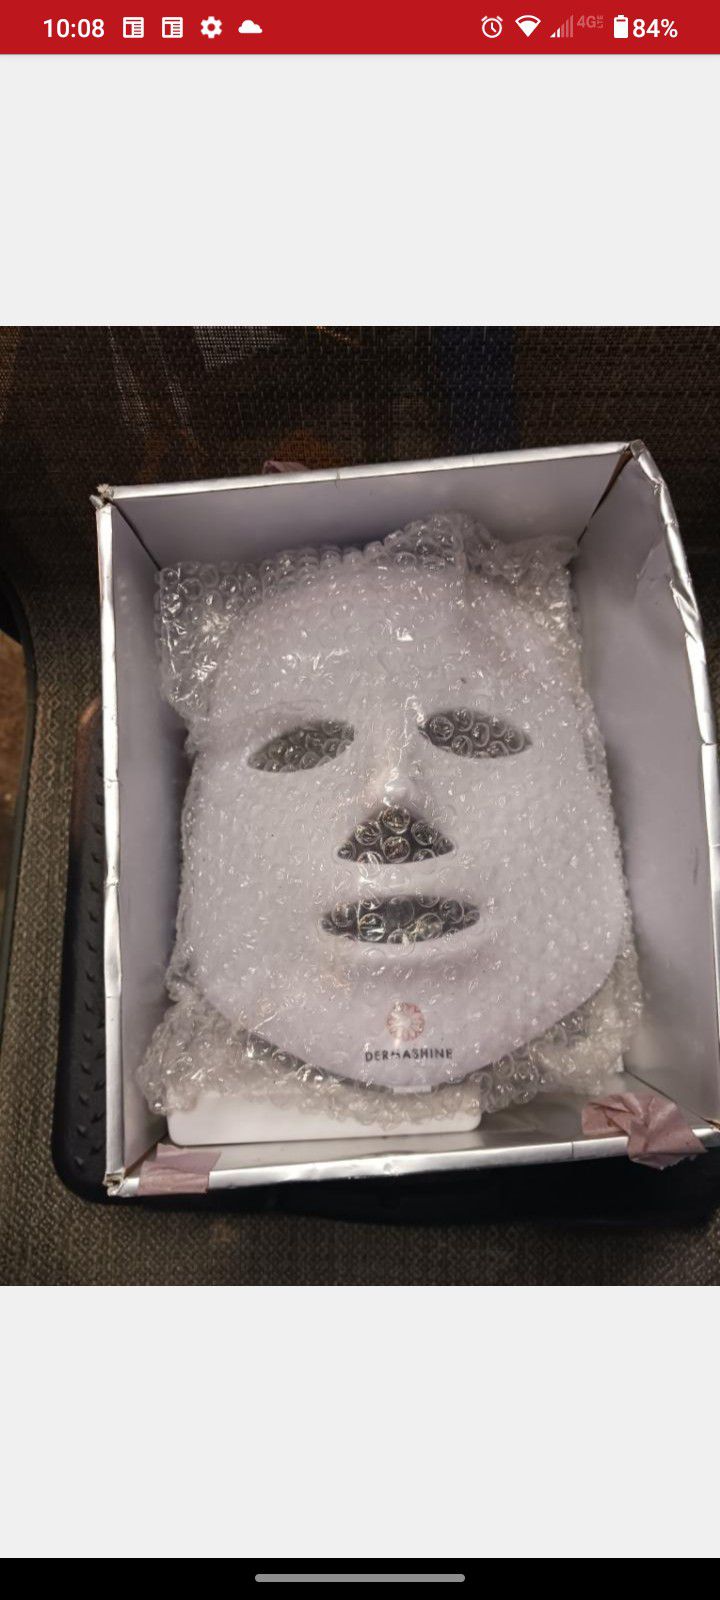 Dermishine Pro 7 Led Face Mask